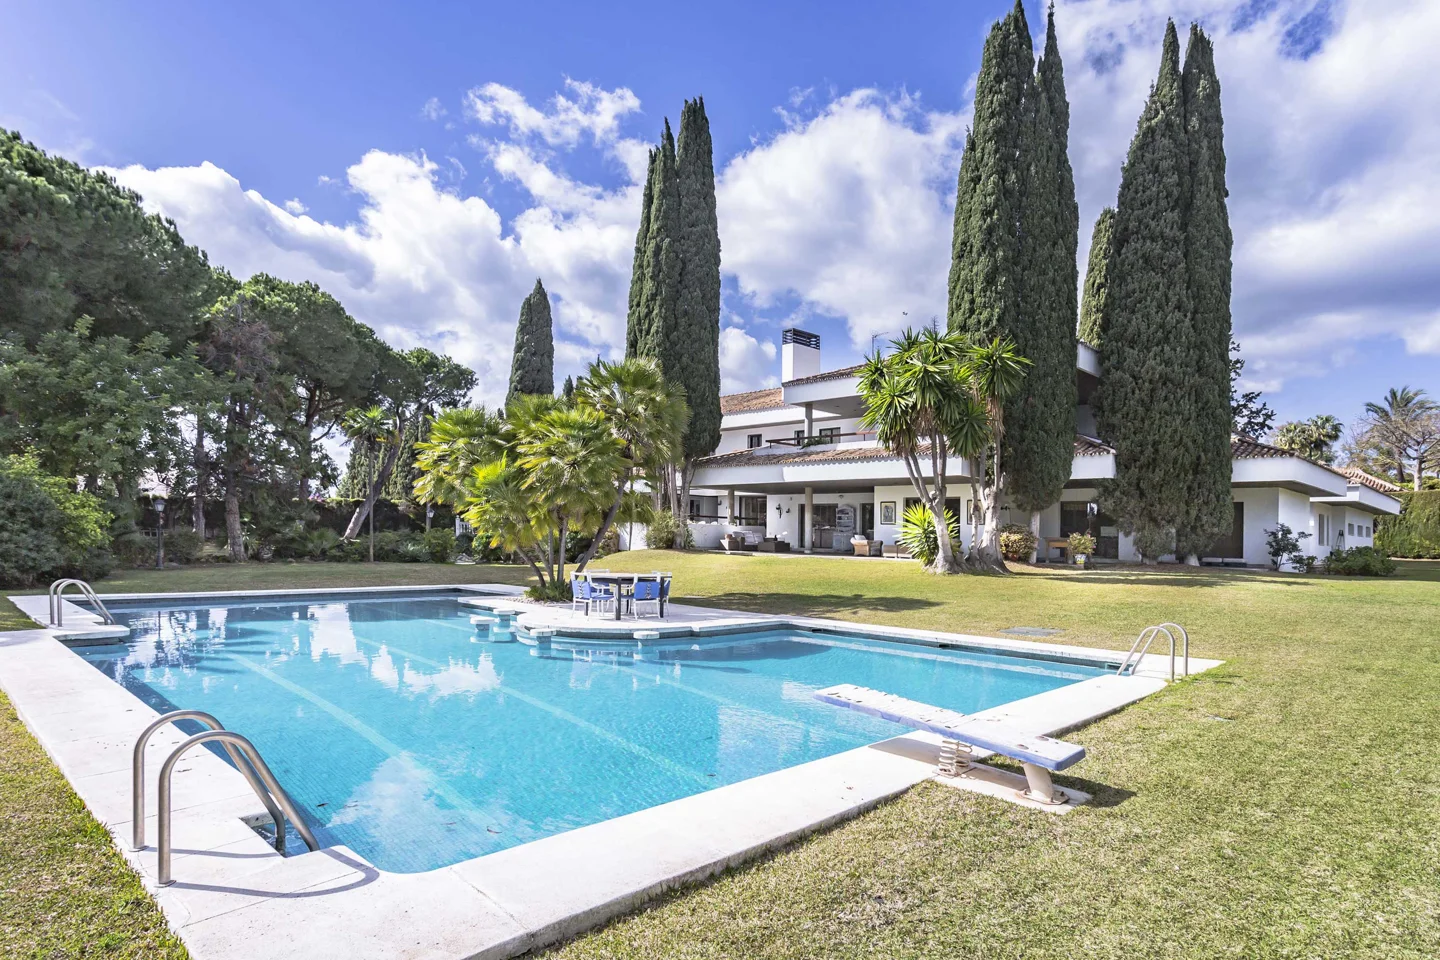 Guadalmina Baja: Elegante villa de estilo contemporáneo a distancia andando de la playa con una gran parcela.